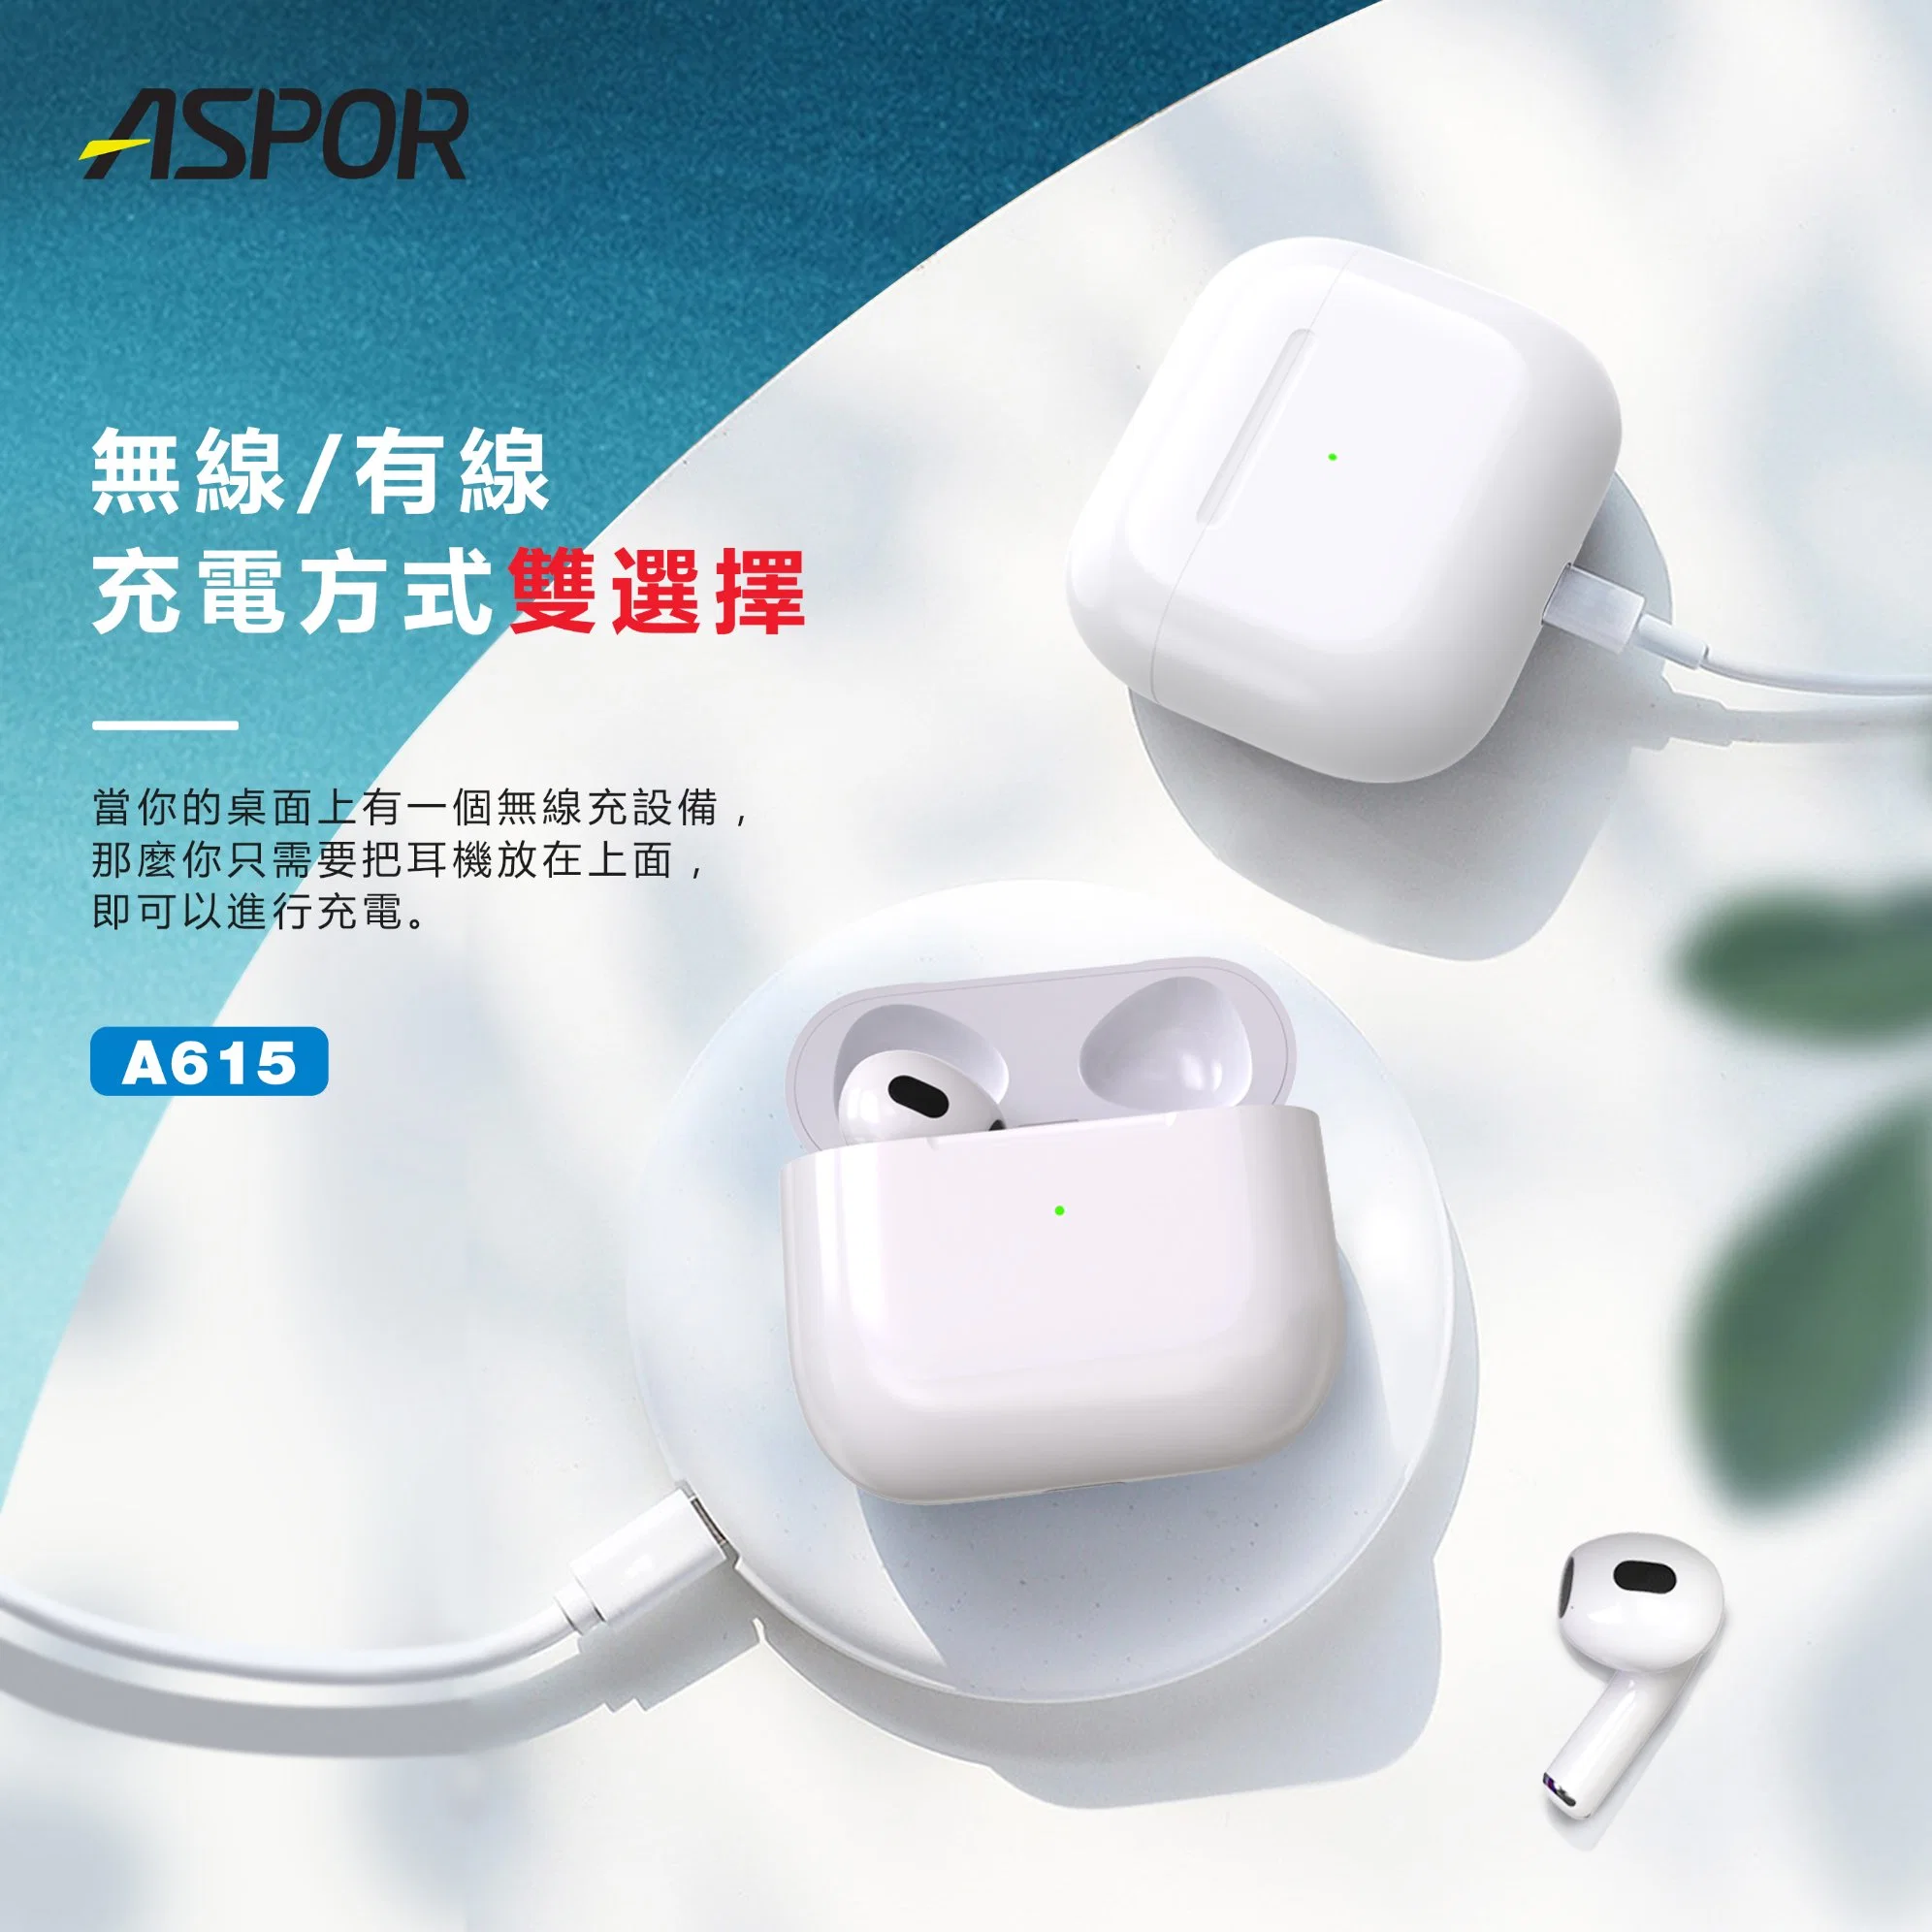 Торговая марка Aspor поддерживает беспроводной зарядки 3 поколений белый гарнитуры Bluetooth версии 5.0 можно использовать в течение 20 часов в 1,5 часов зарядки